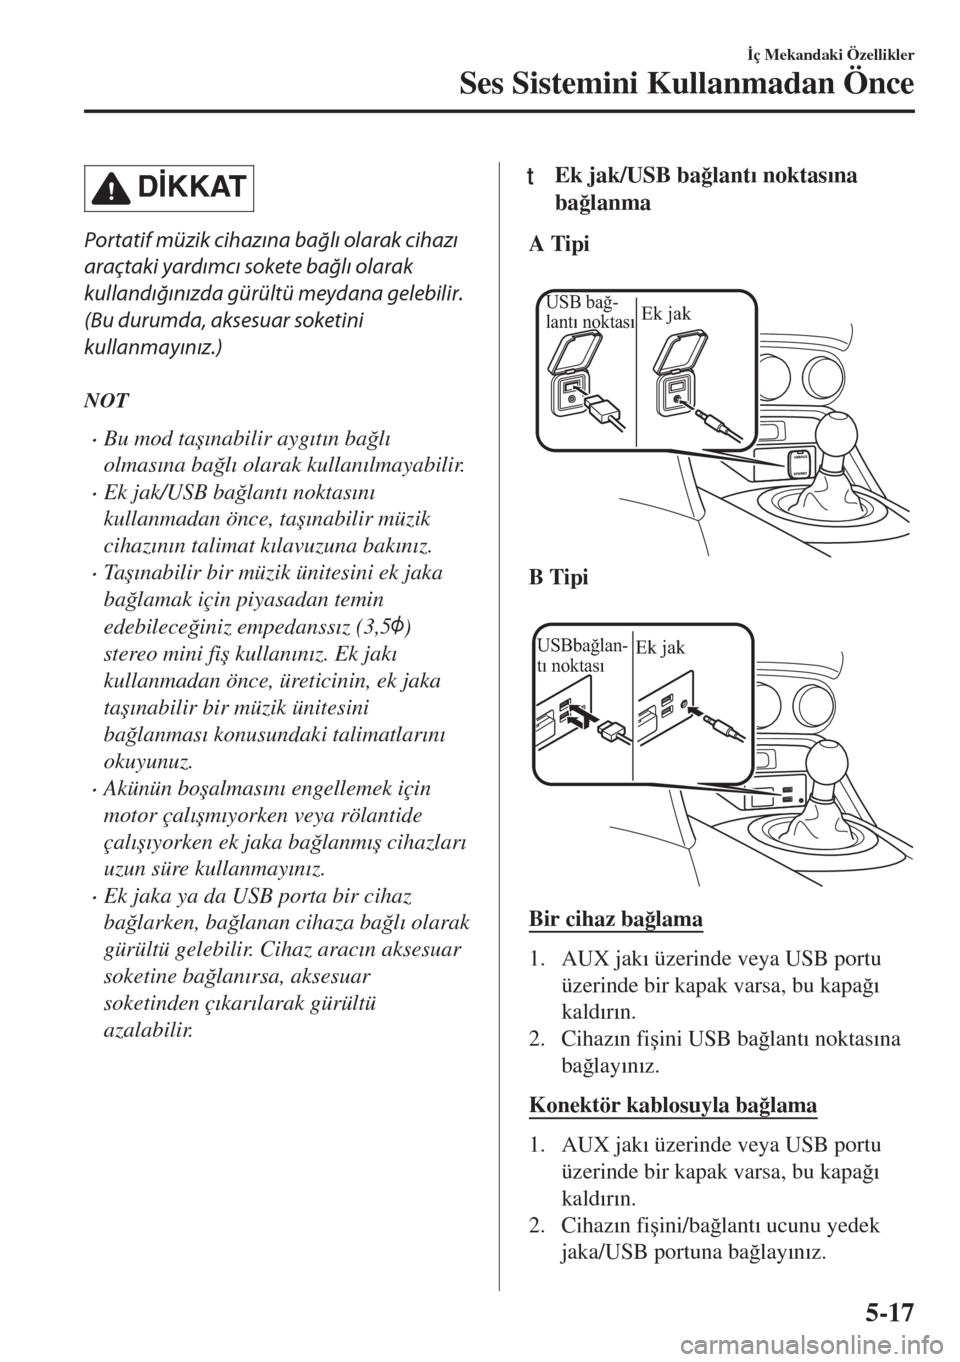 MAZDA MODEL MX-5 2018  Kullanım Kılavuzu (in Turkish) D�øKKAT
Portatif müzik cihazına bağlı olarak cihazı
araçtaki yardımcı sokete bağlı olarak
kullandığınızda gürültü meydana gelebilir.
(Bu durumda, aksesuar soketini
kullanmayınız.)
